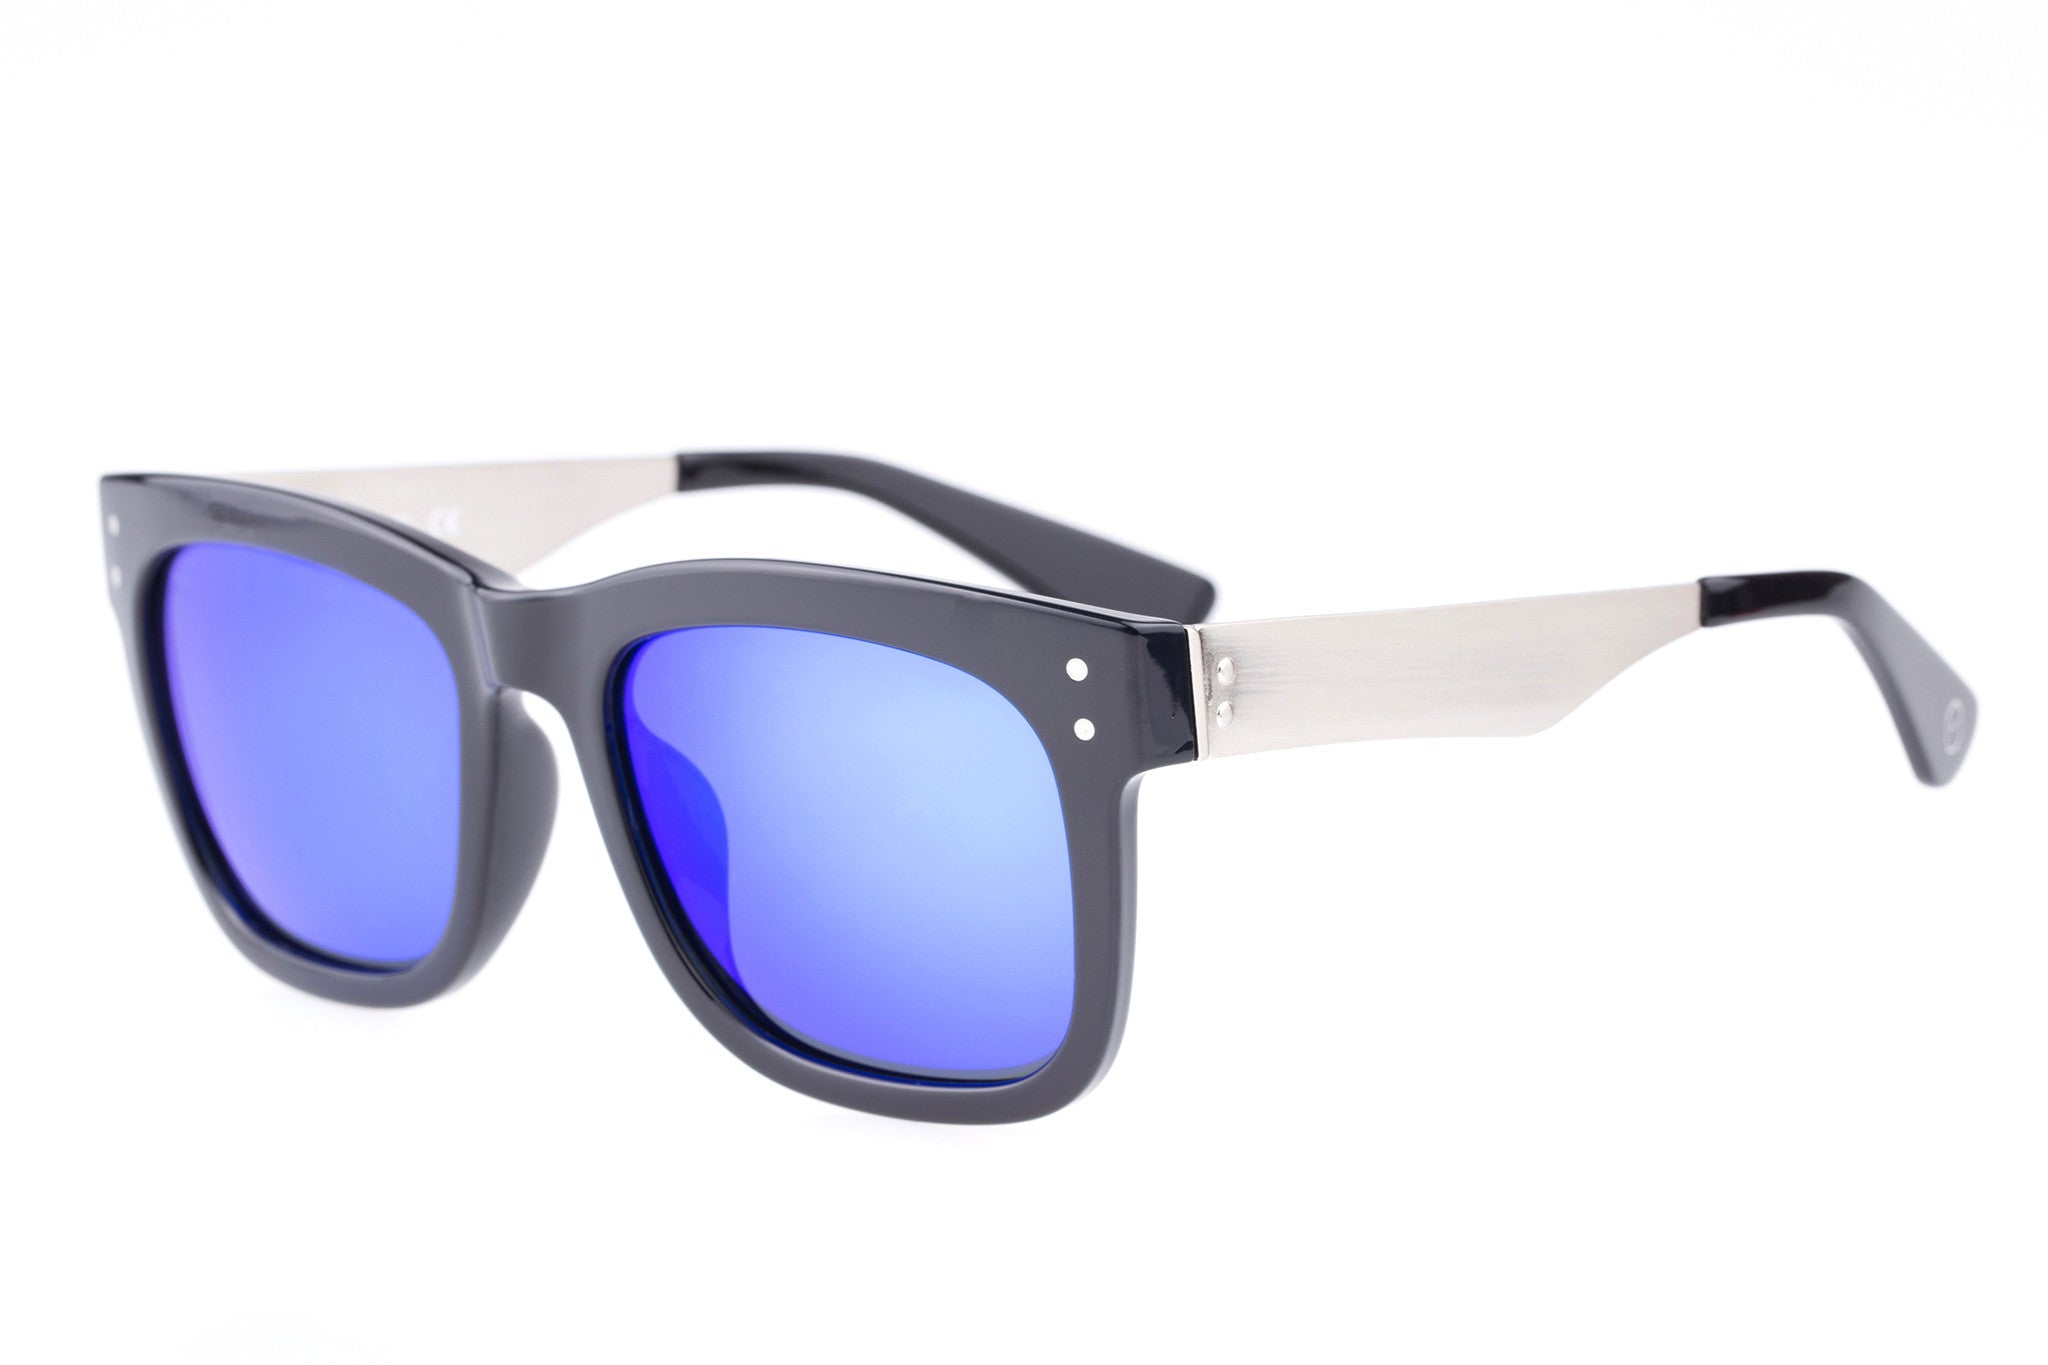 HOWEVER Black Sunglasses | Online Eyeglasses Store